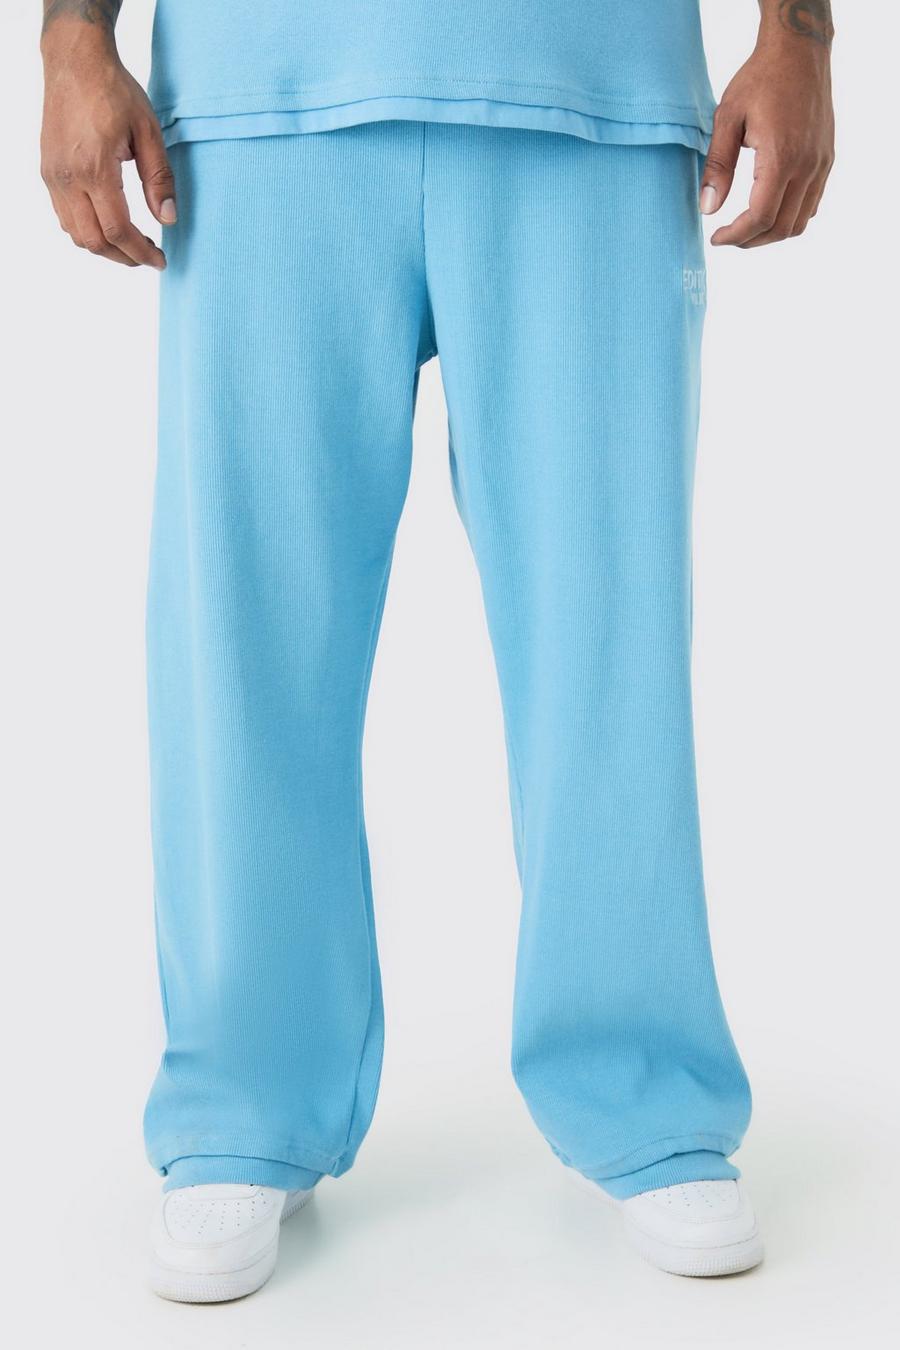 Pantaloni tuta Plus Size EDITION pesanti dritti a coste con spacco sul fondo, Blue